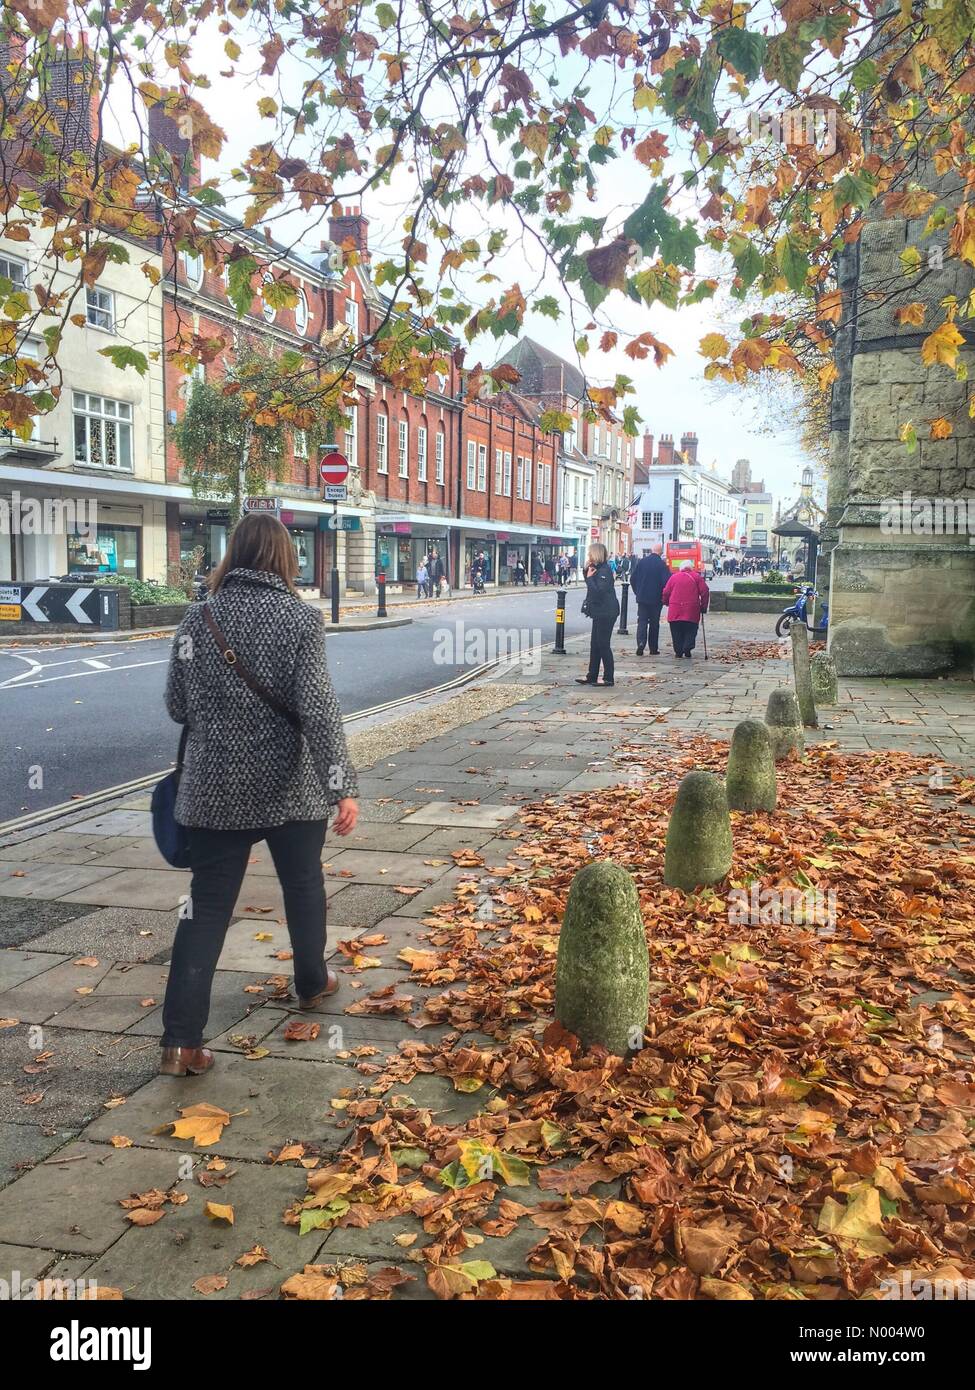 Météo France, le samedi 31/10/2015. Avec les feuilles tombées sur le sol de Chichester dans le West Sussex, elle donne une impression d'automne à l'Halloween. Banque D'Images